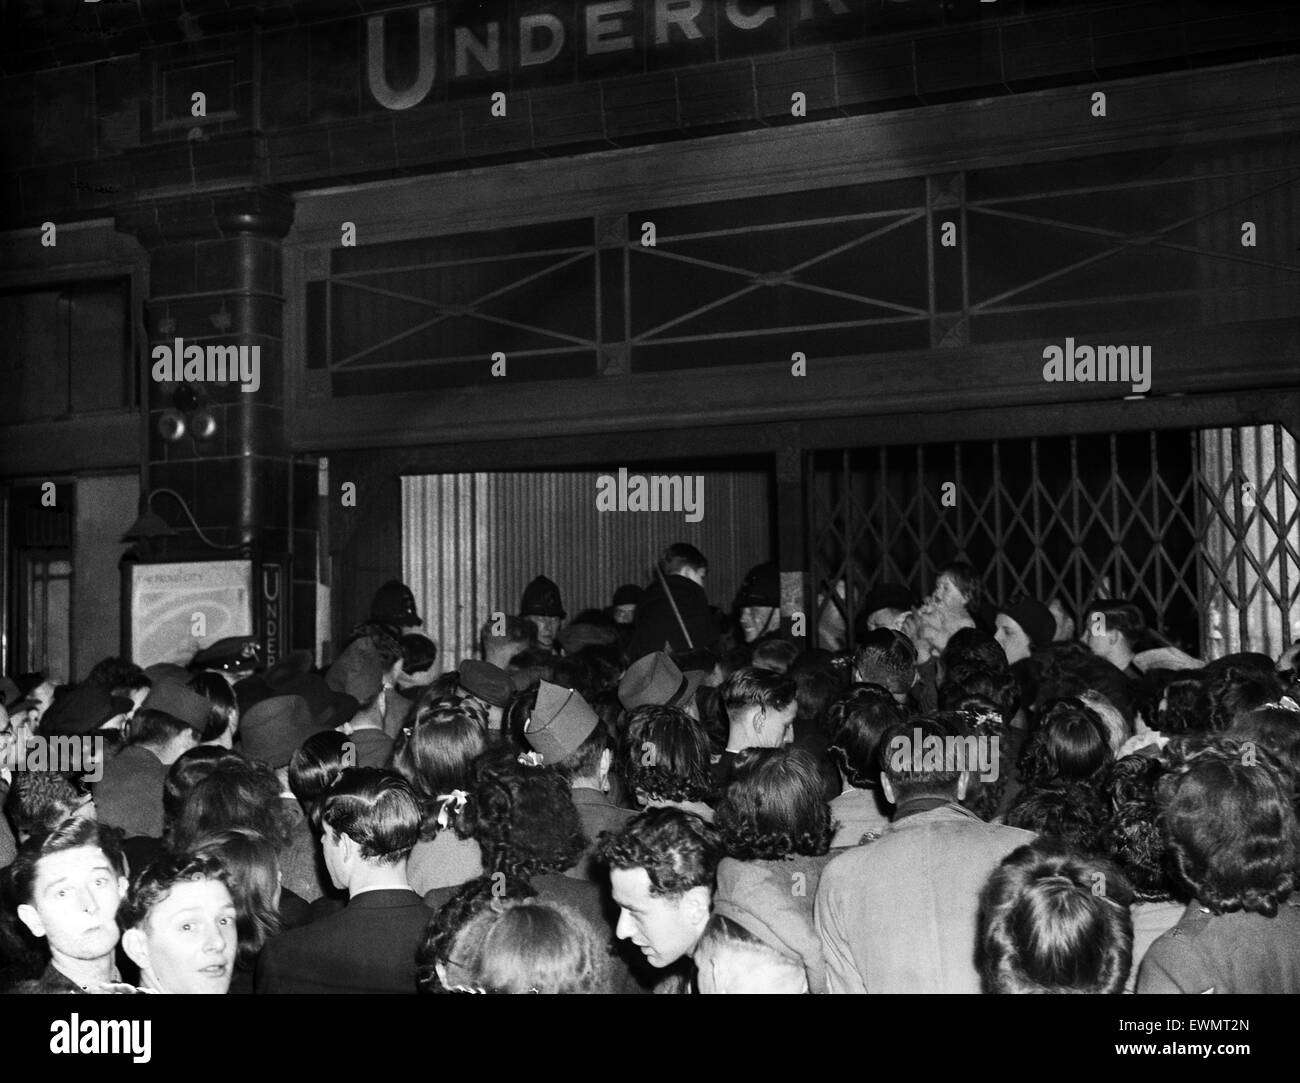 VE Day Feierlichkeiten in London am Ende des zweiten Weltkriegs.  Riesige Menschenmengen versammelten sich vor einer u-Bahnstation während der Feierlichkeiten.  8. Mai 1945. Stockfoto